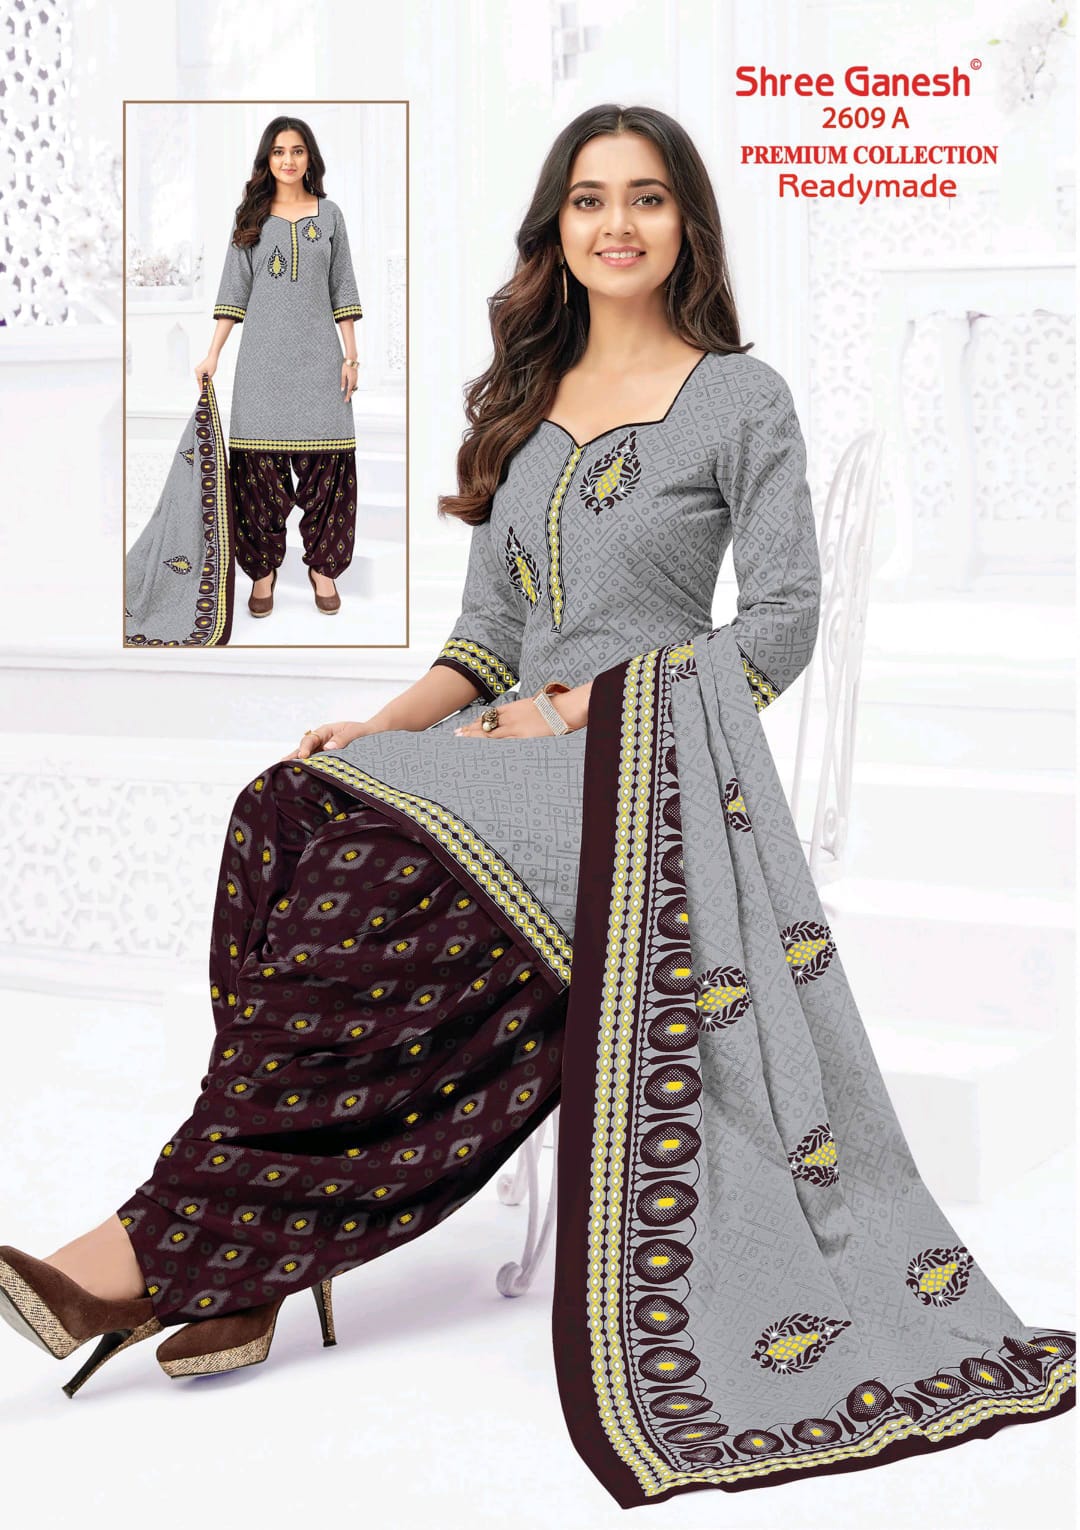 Shree Ganesh Hansika Kiyara Vol 7 Readymade Cotton Patiyala Special Suits